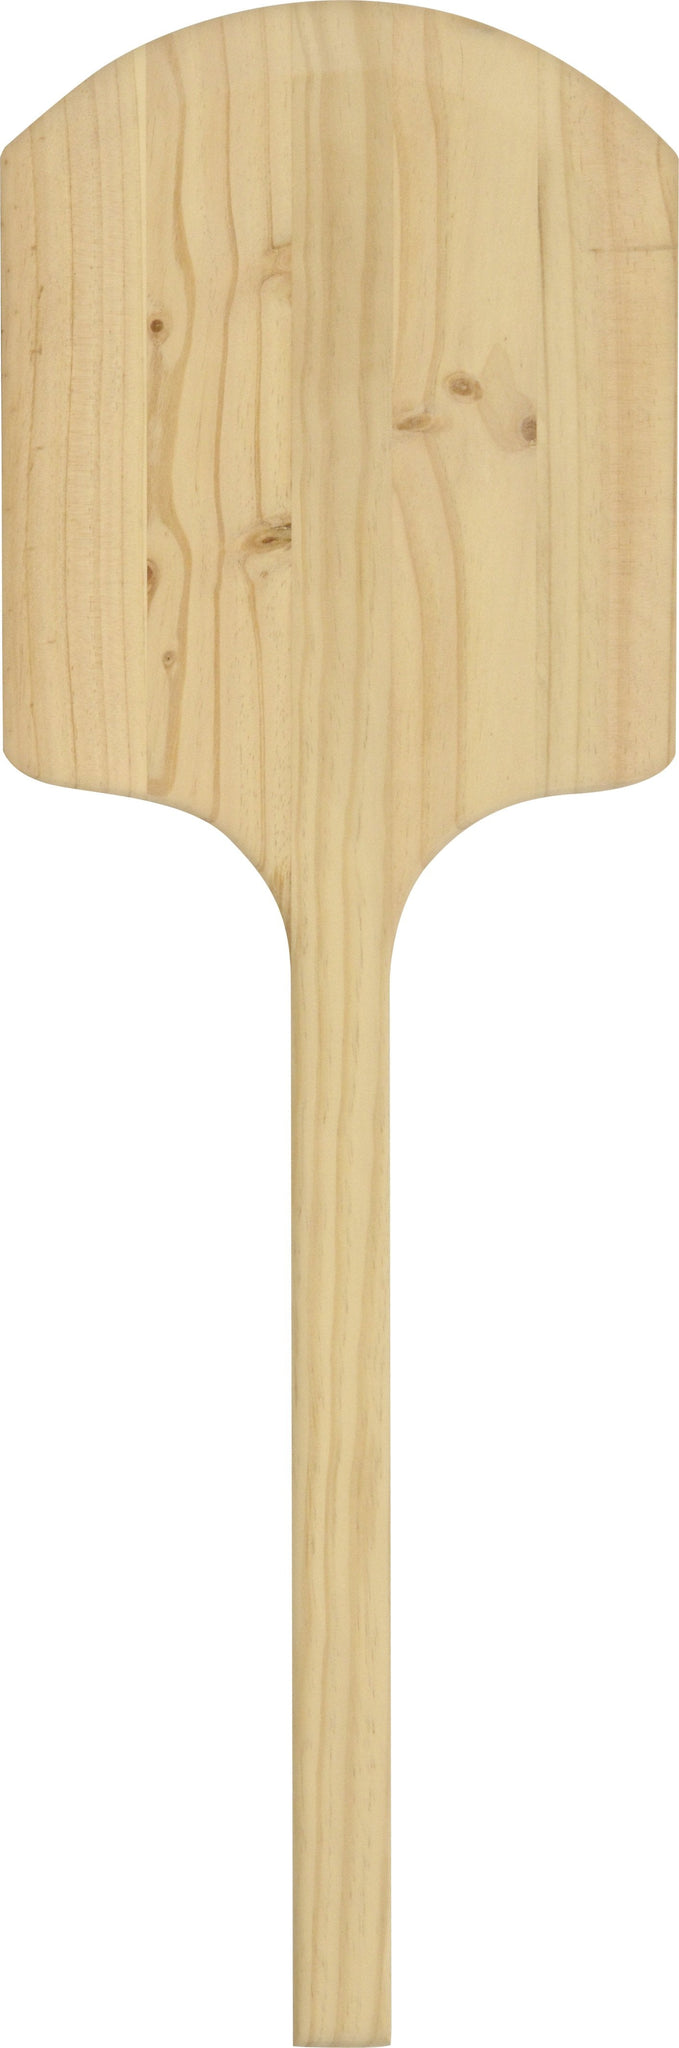 Omcan - 36" Wooden Pizza Peel (12" x 14"), 10/cs - 80601